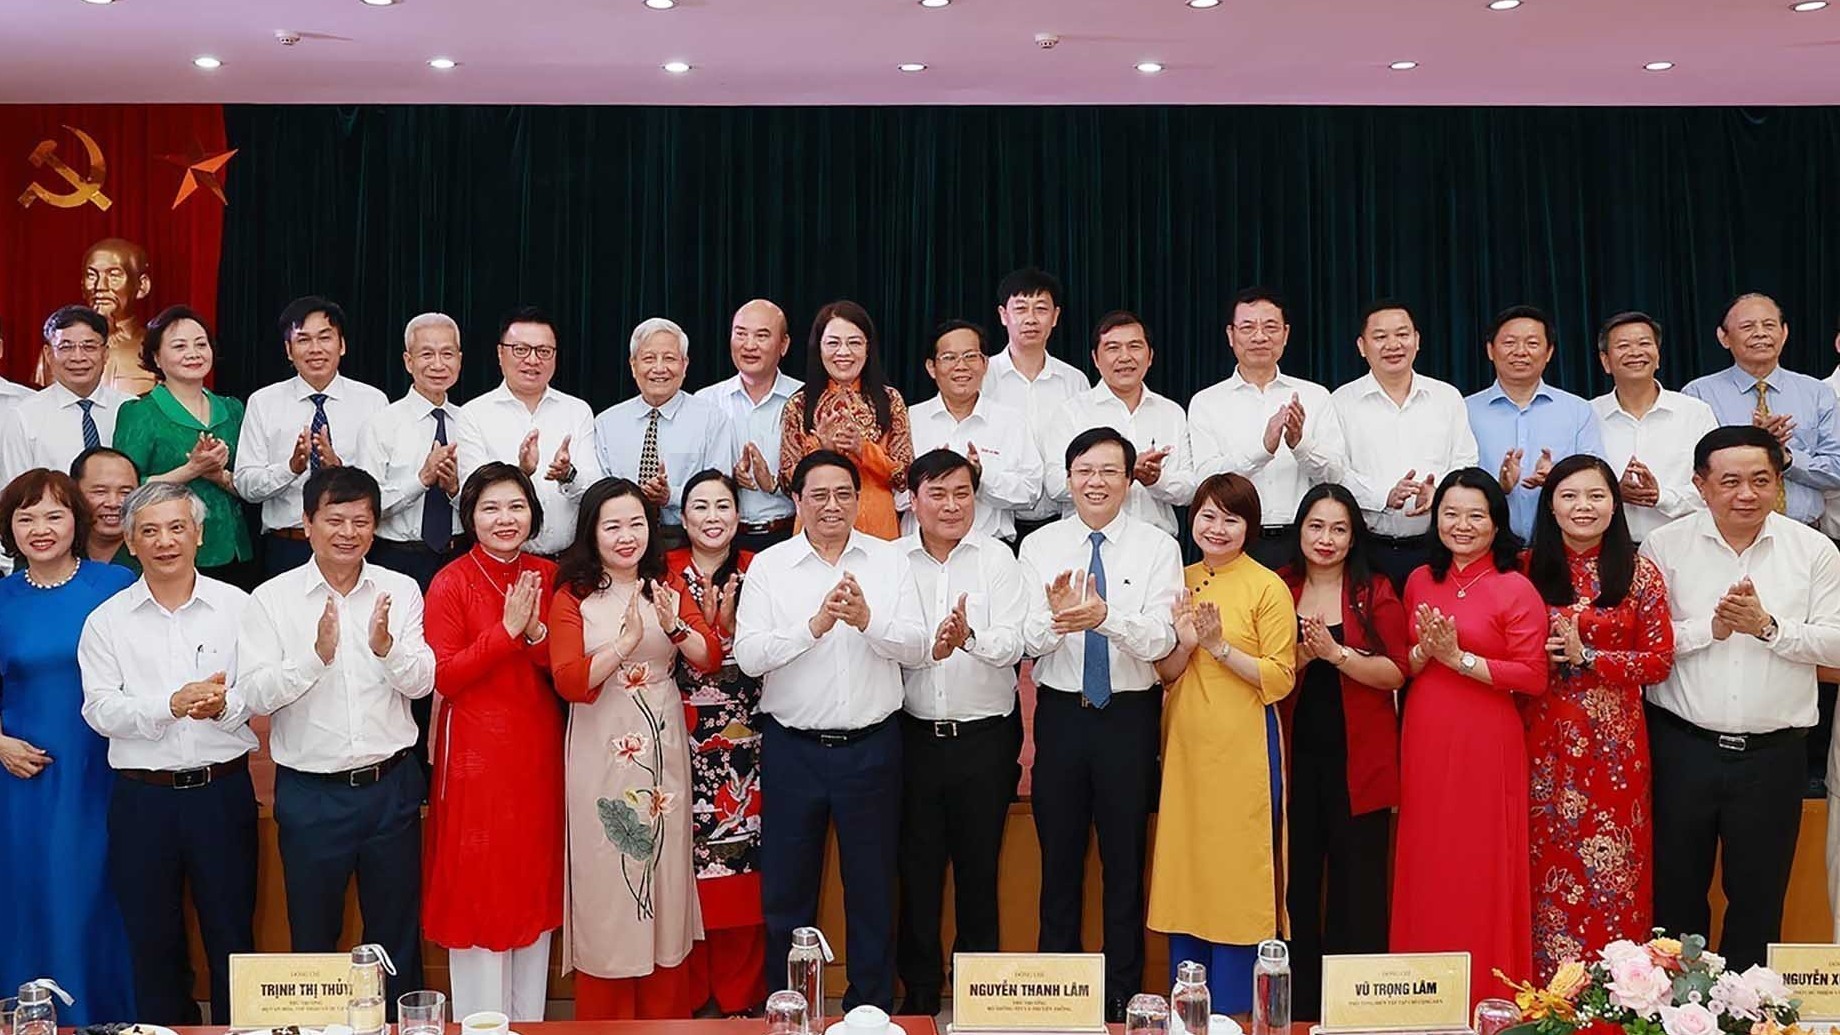 Thủ tướng Phạm Minh Chính: Báo chí phải phát huy, tôn vinh các giá trị cốt lõi của dân tộc